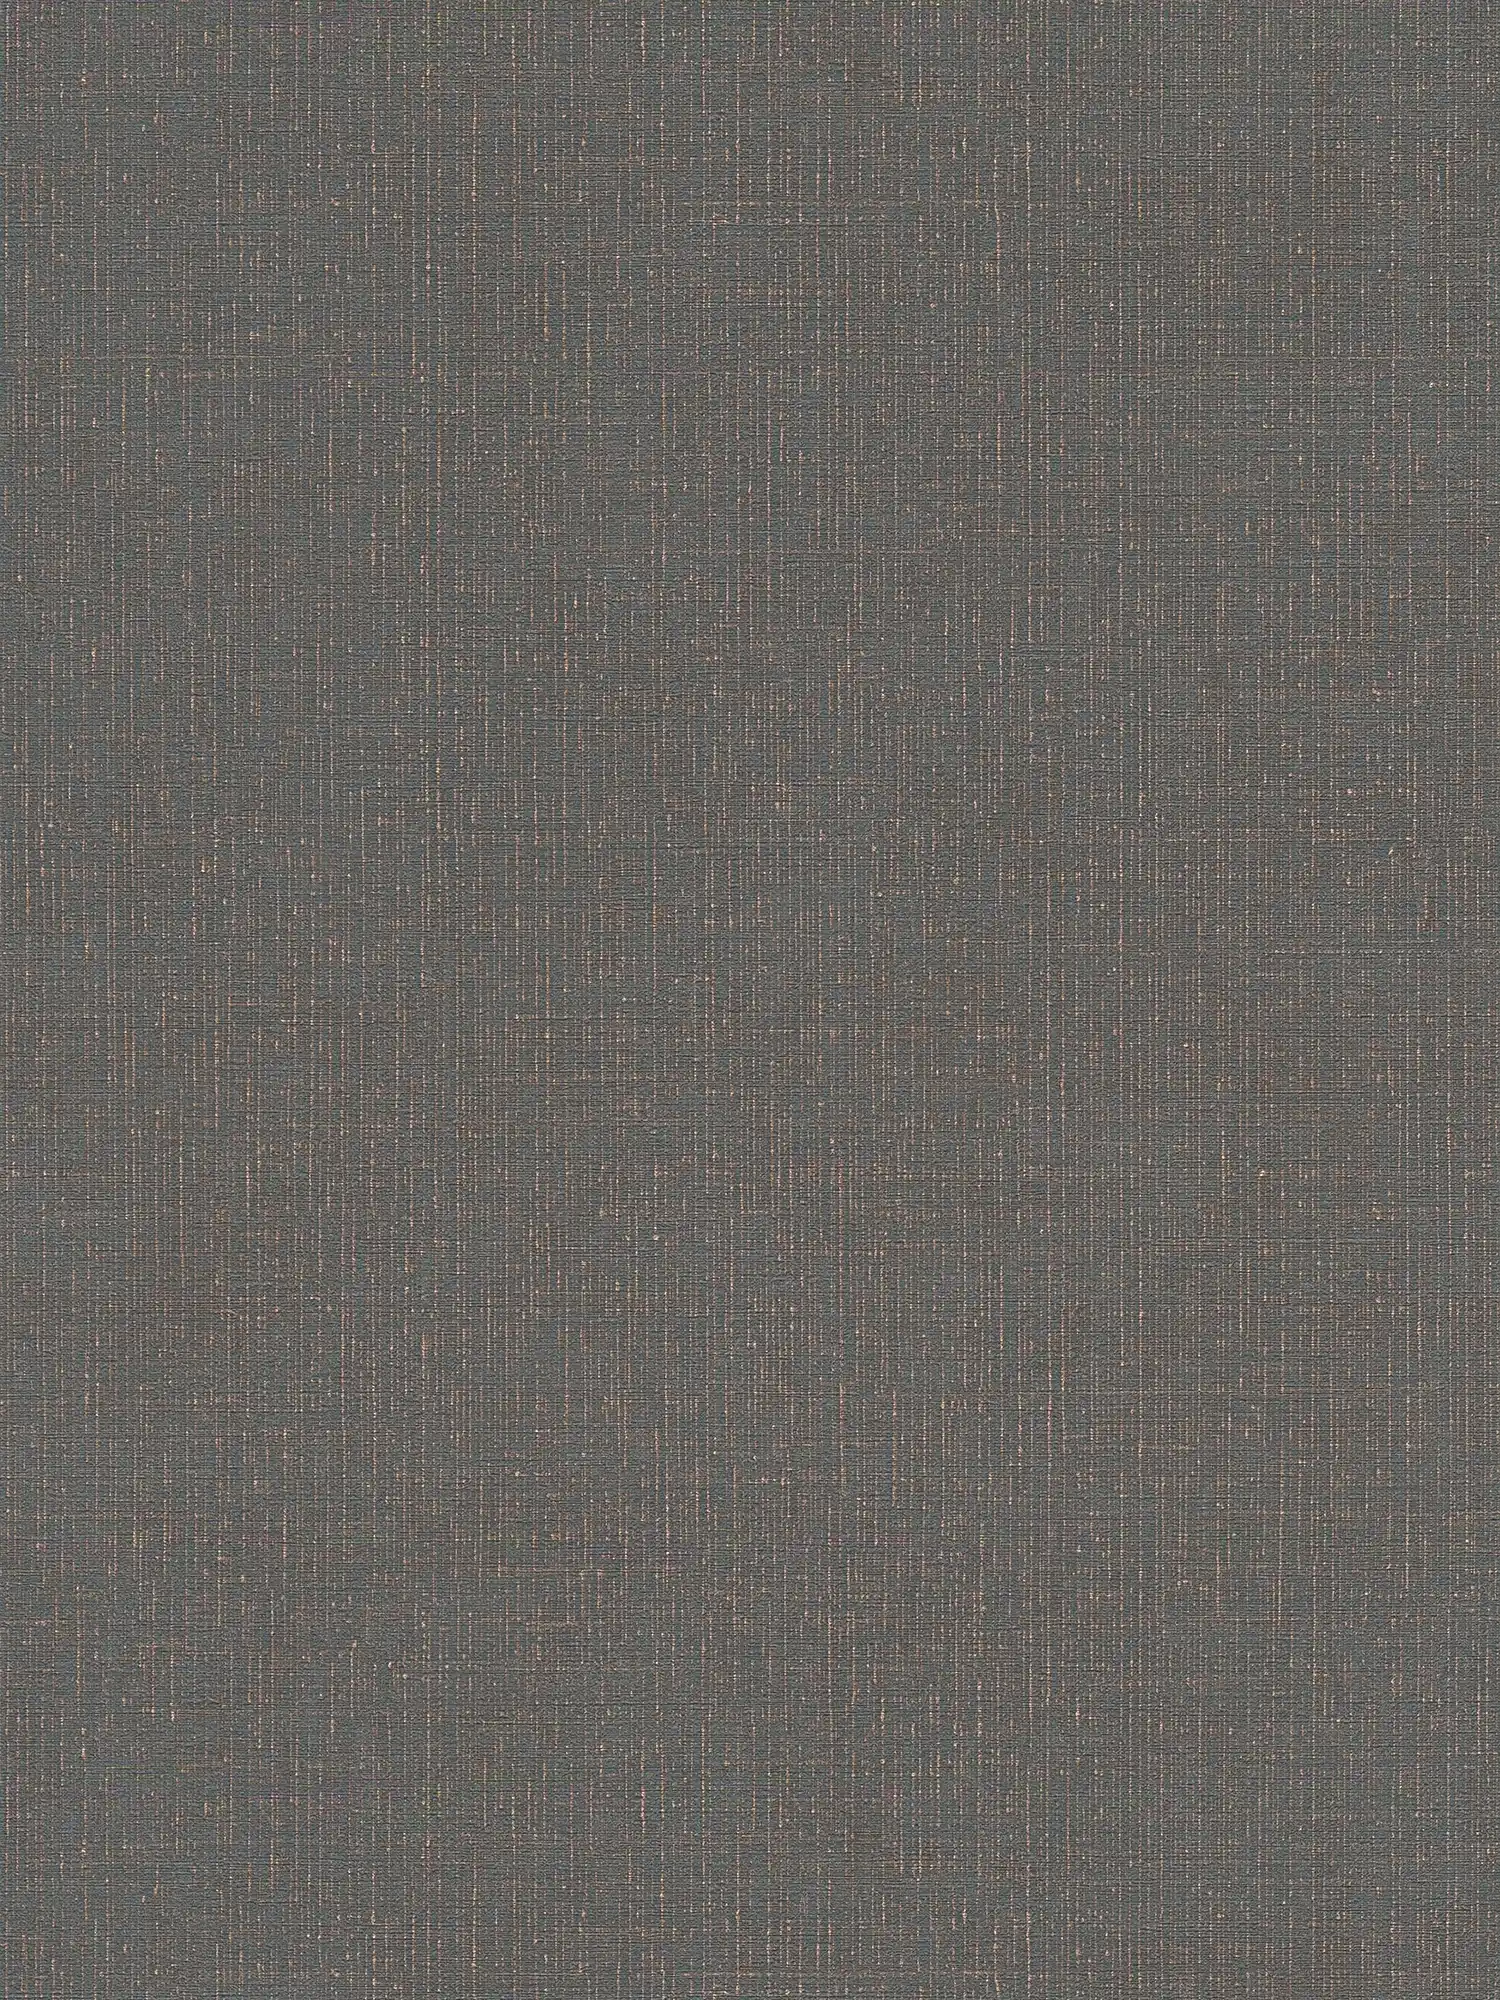 Textiloptik Tapete Anthrazit mit Leinenstruktur – Schwarz, Grau
